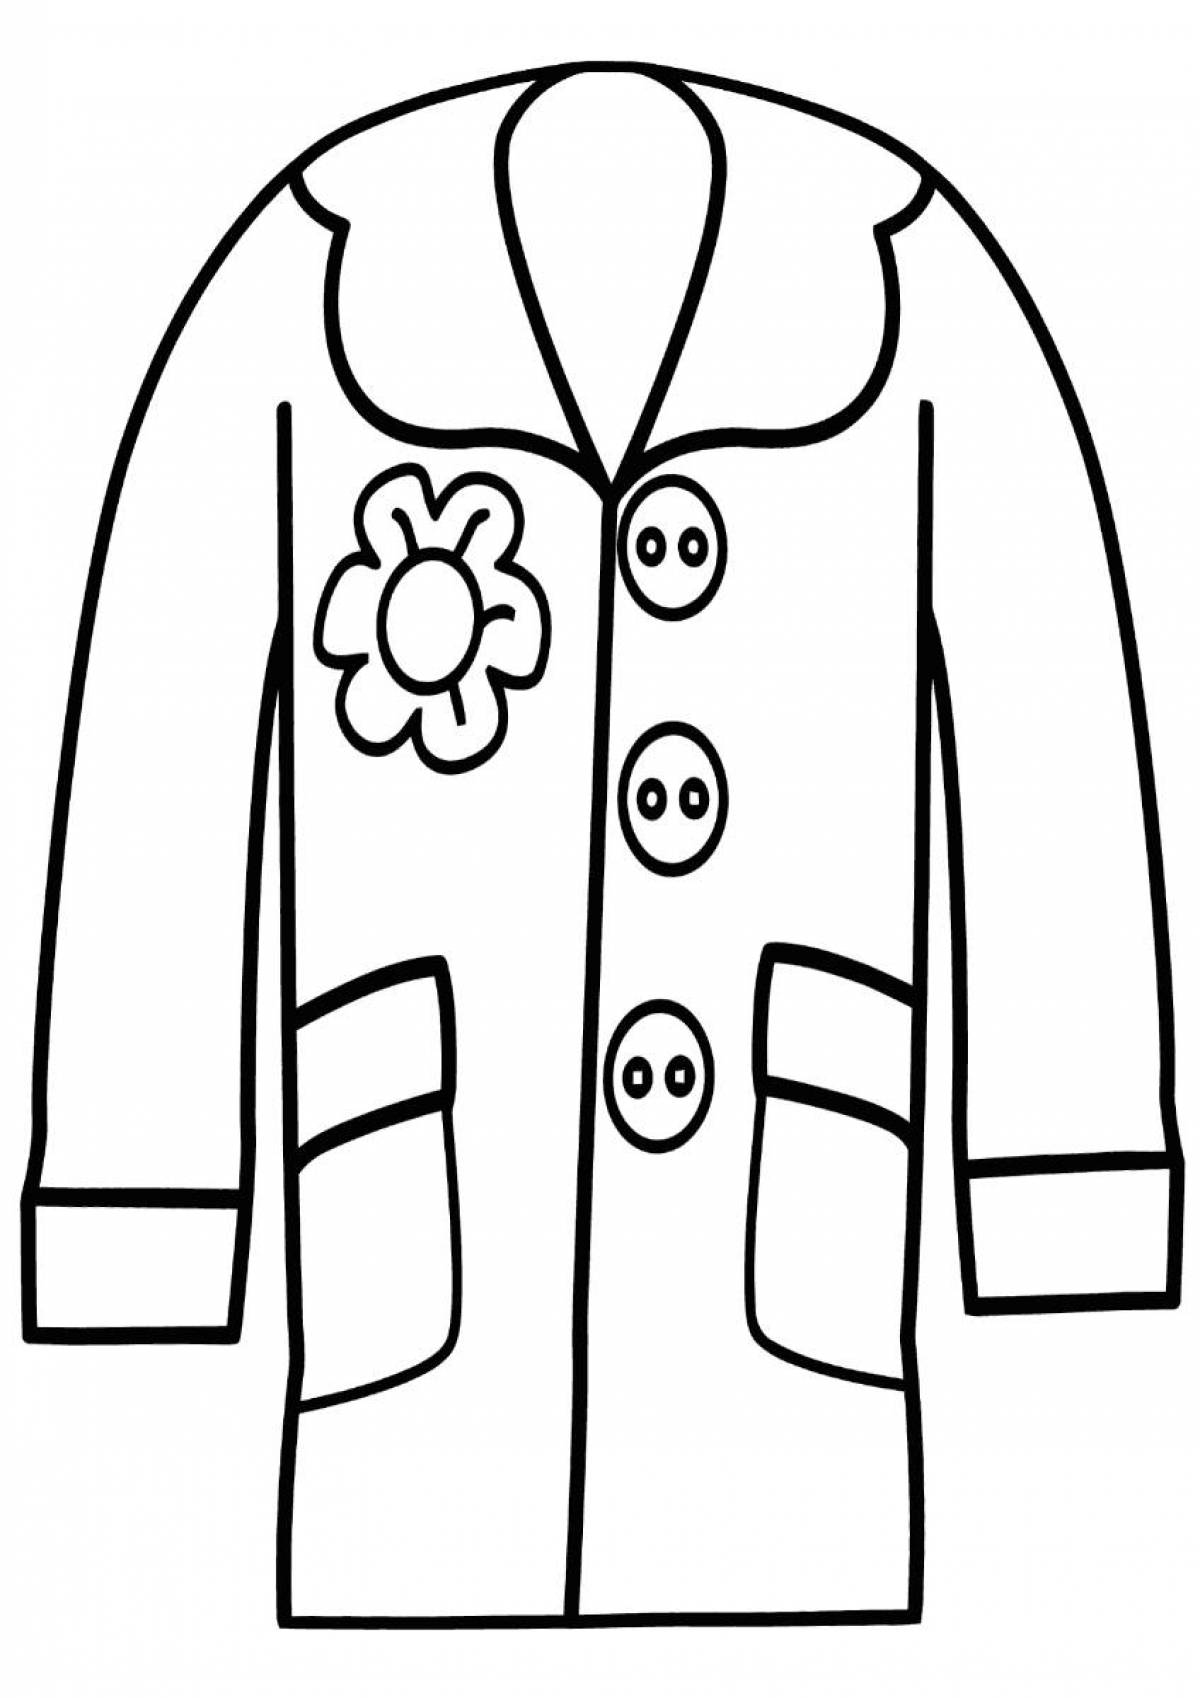 Flower coat